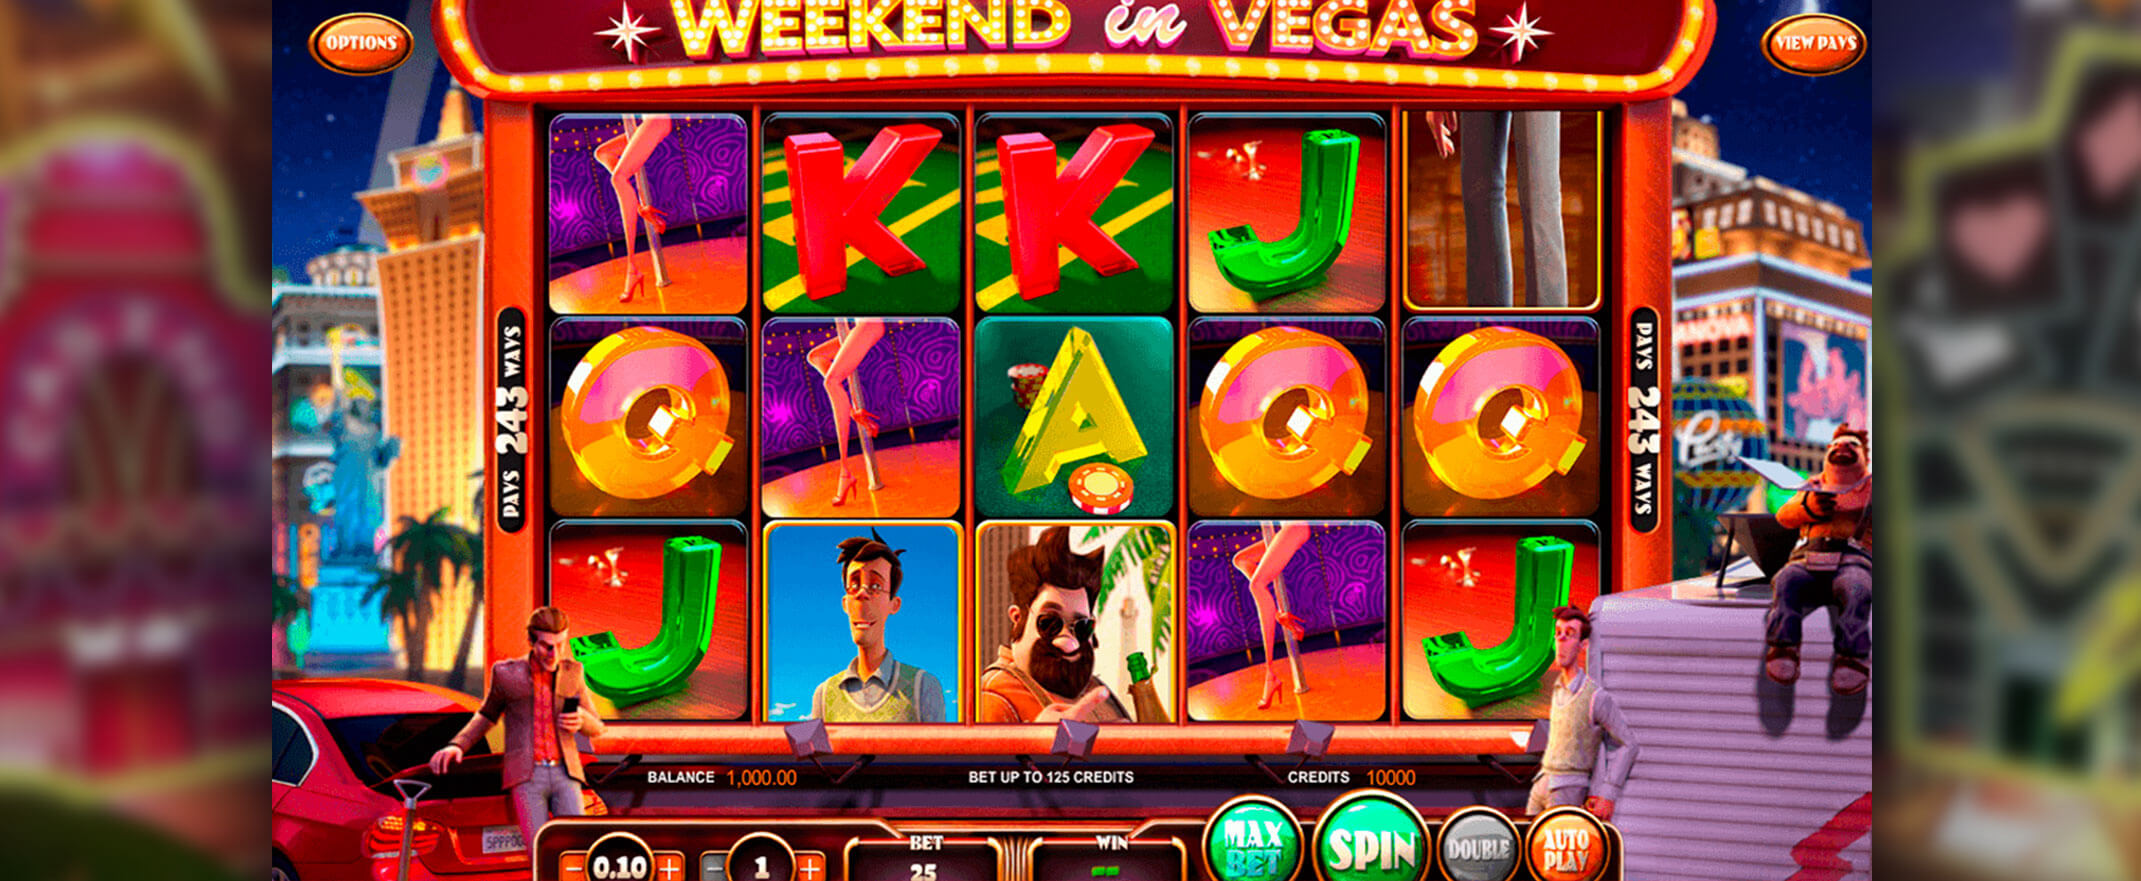 Weekend in Vegas Spielautomat